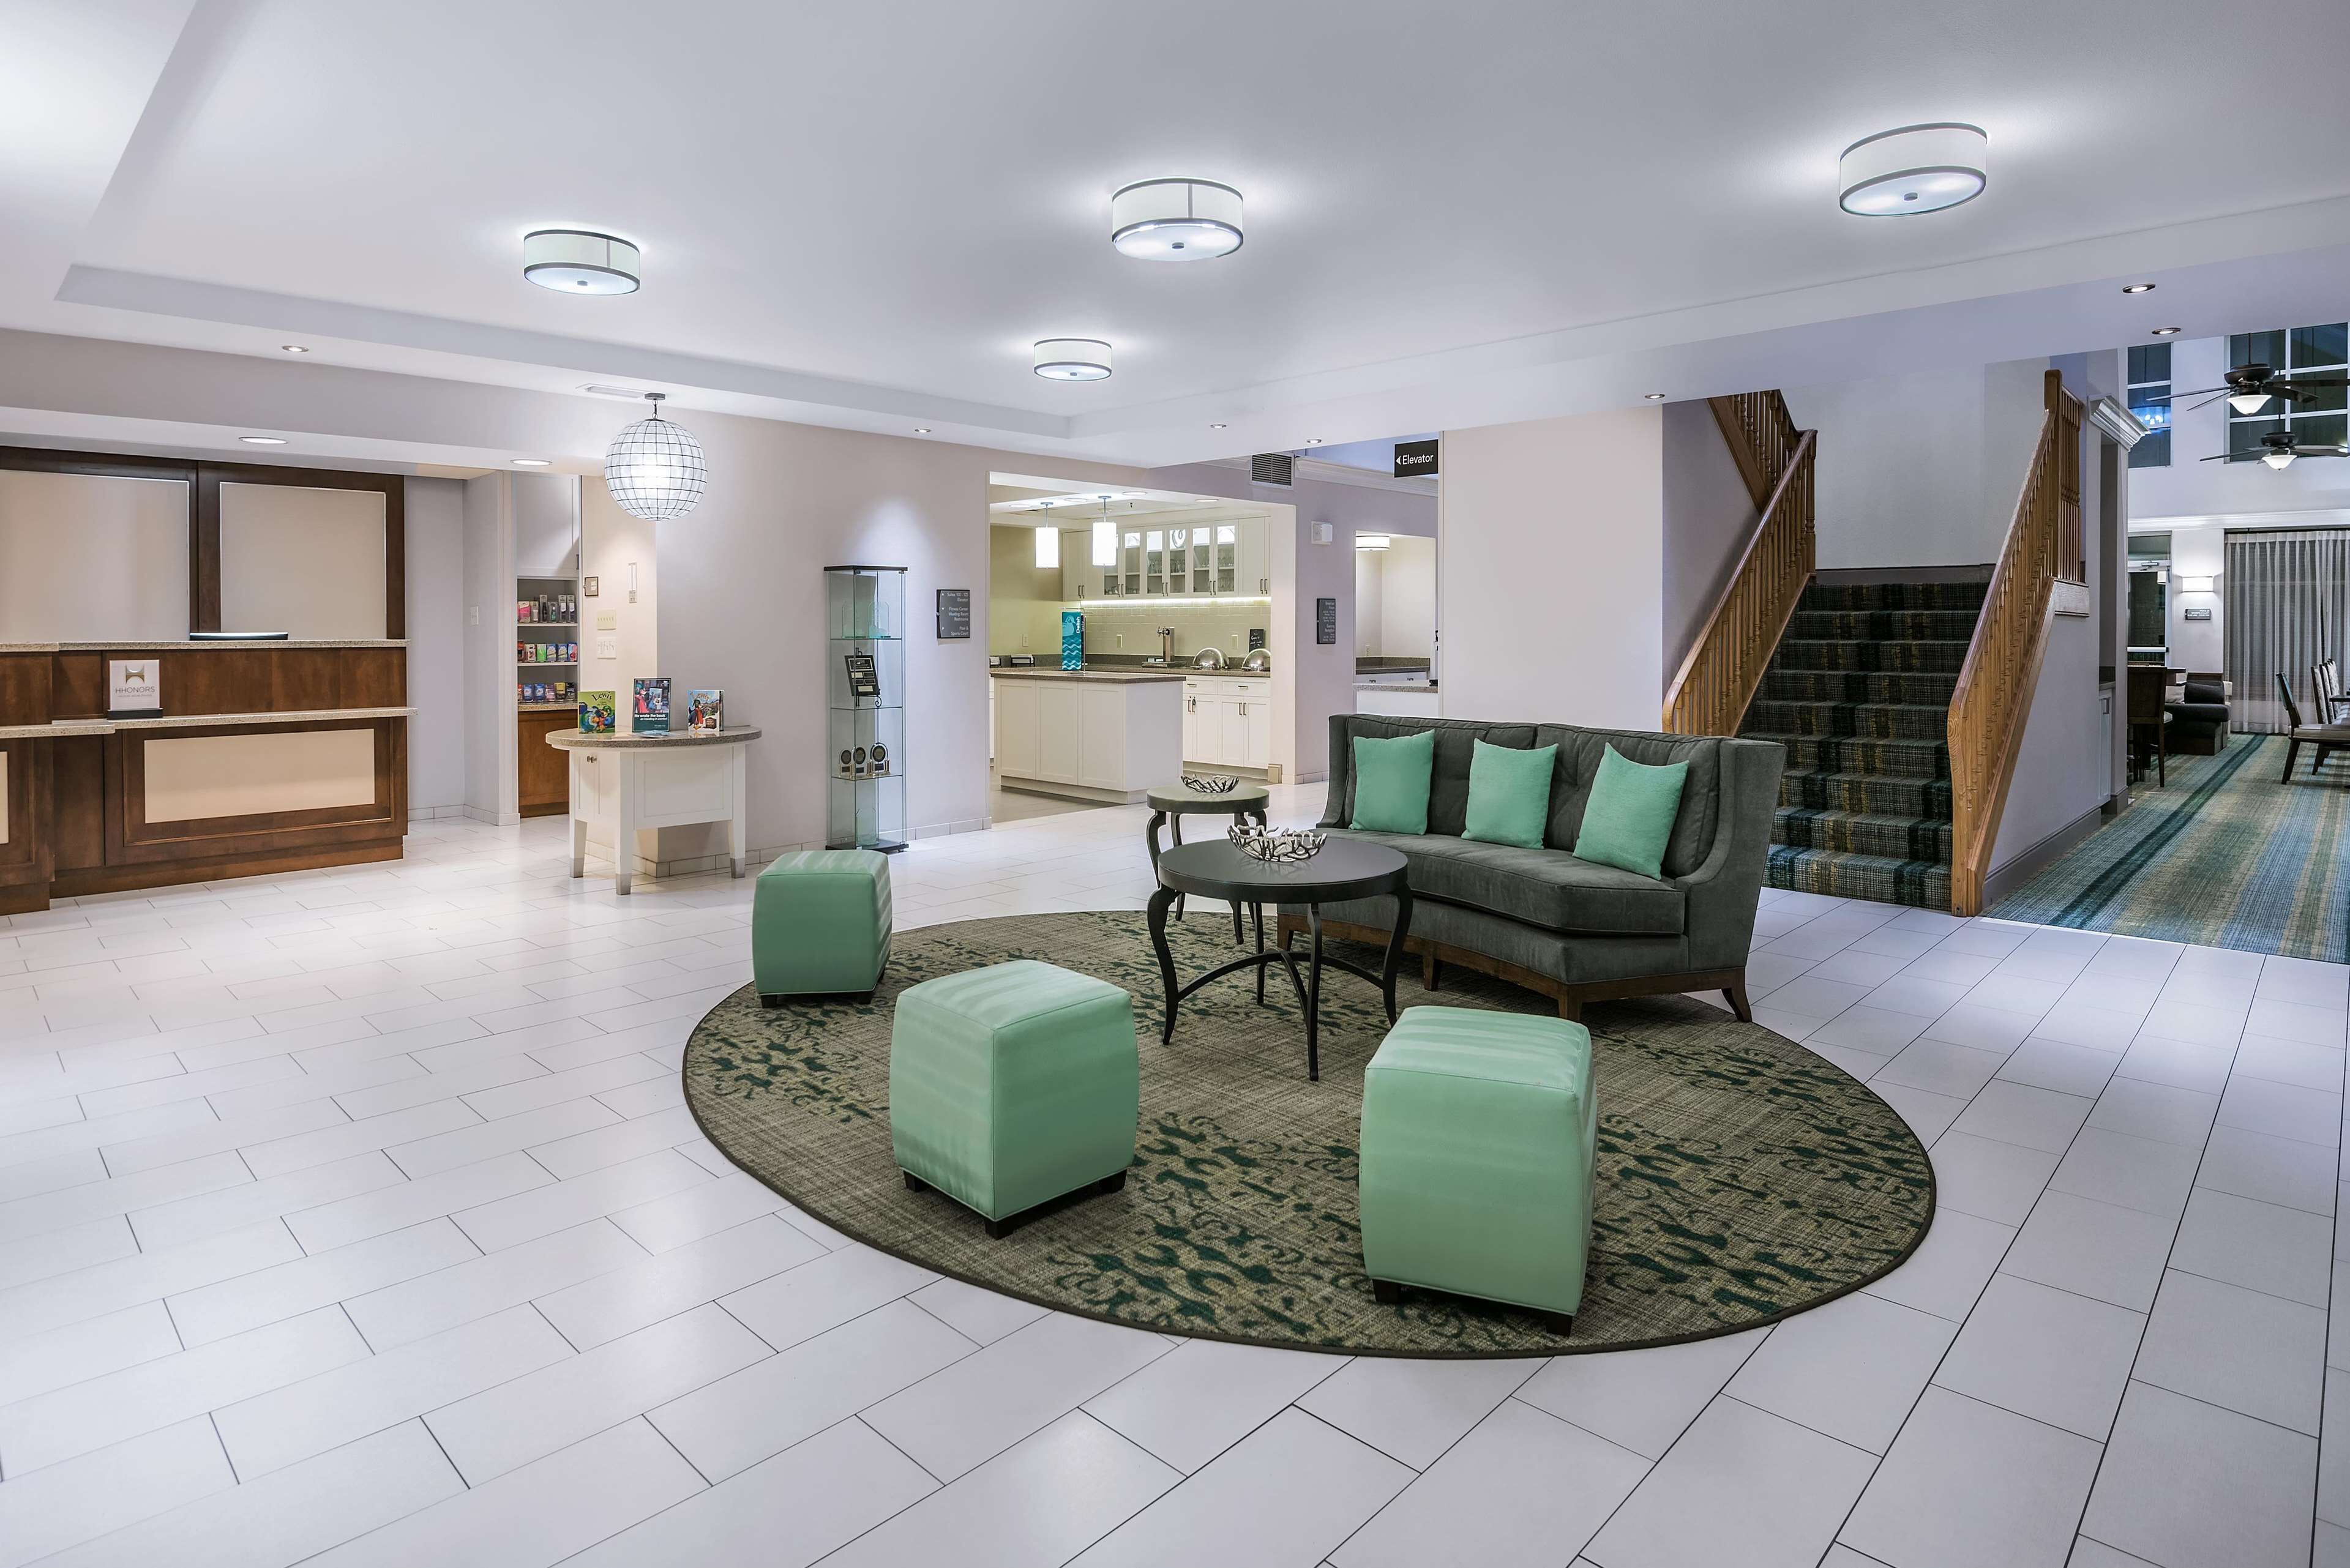 Homewood Suites by Hilton Phoenix-Metro Center